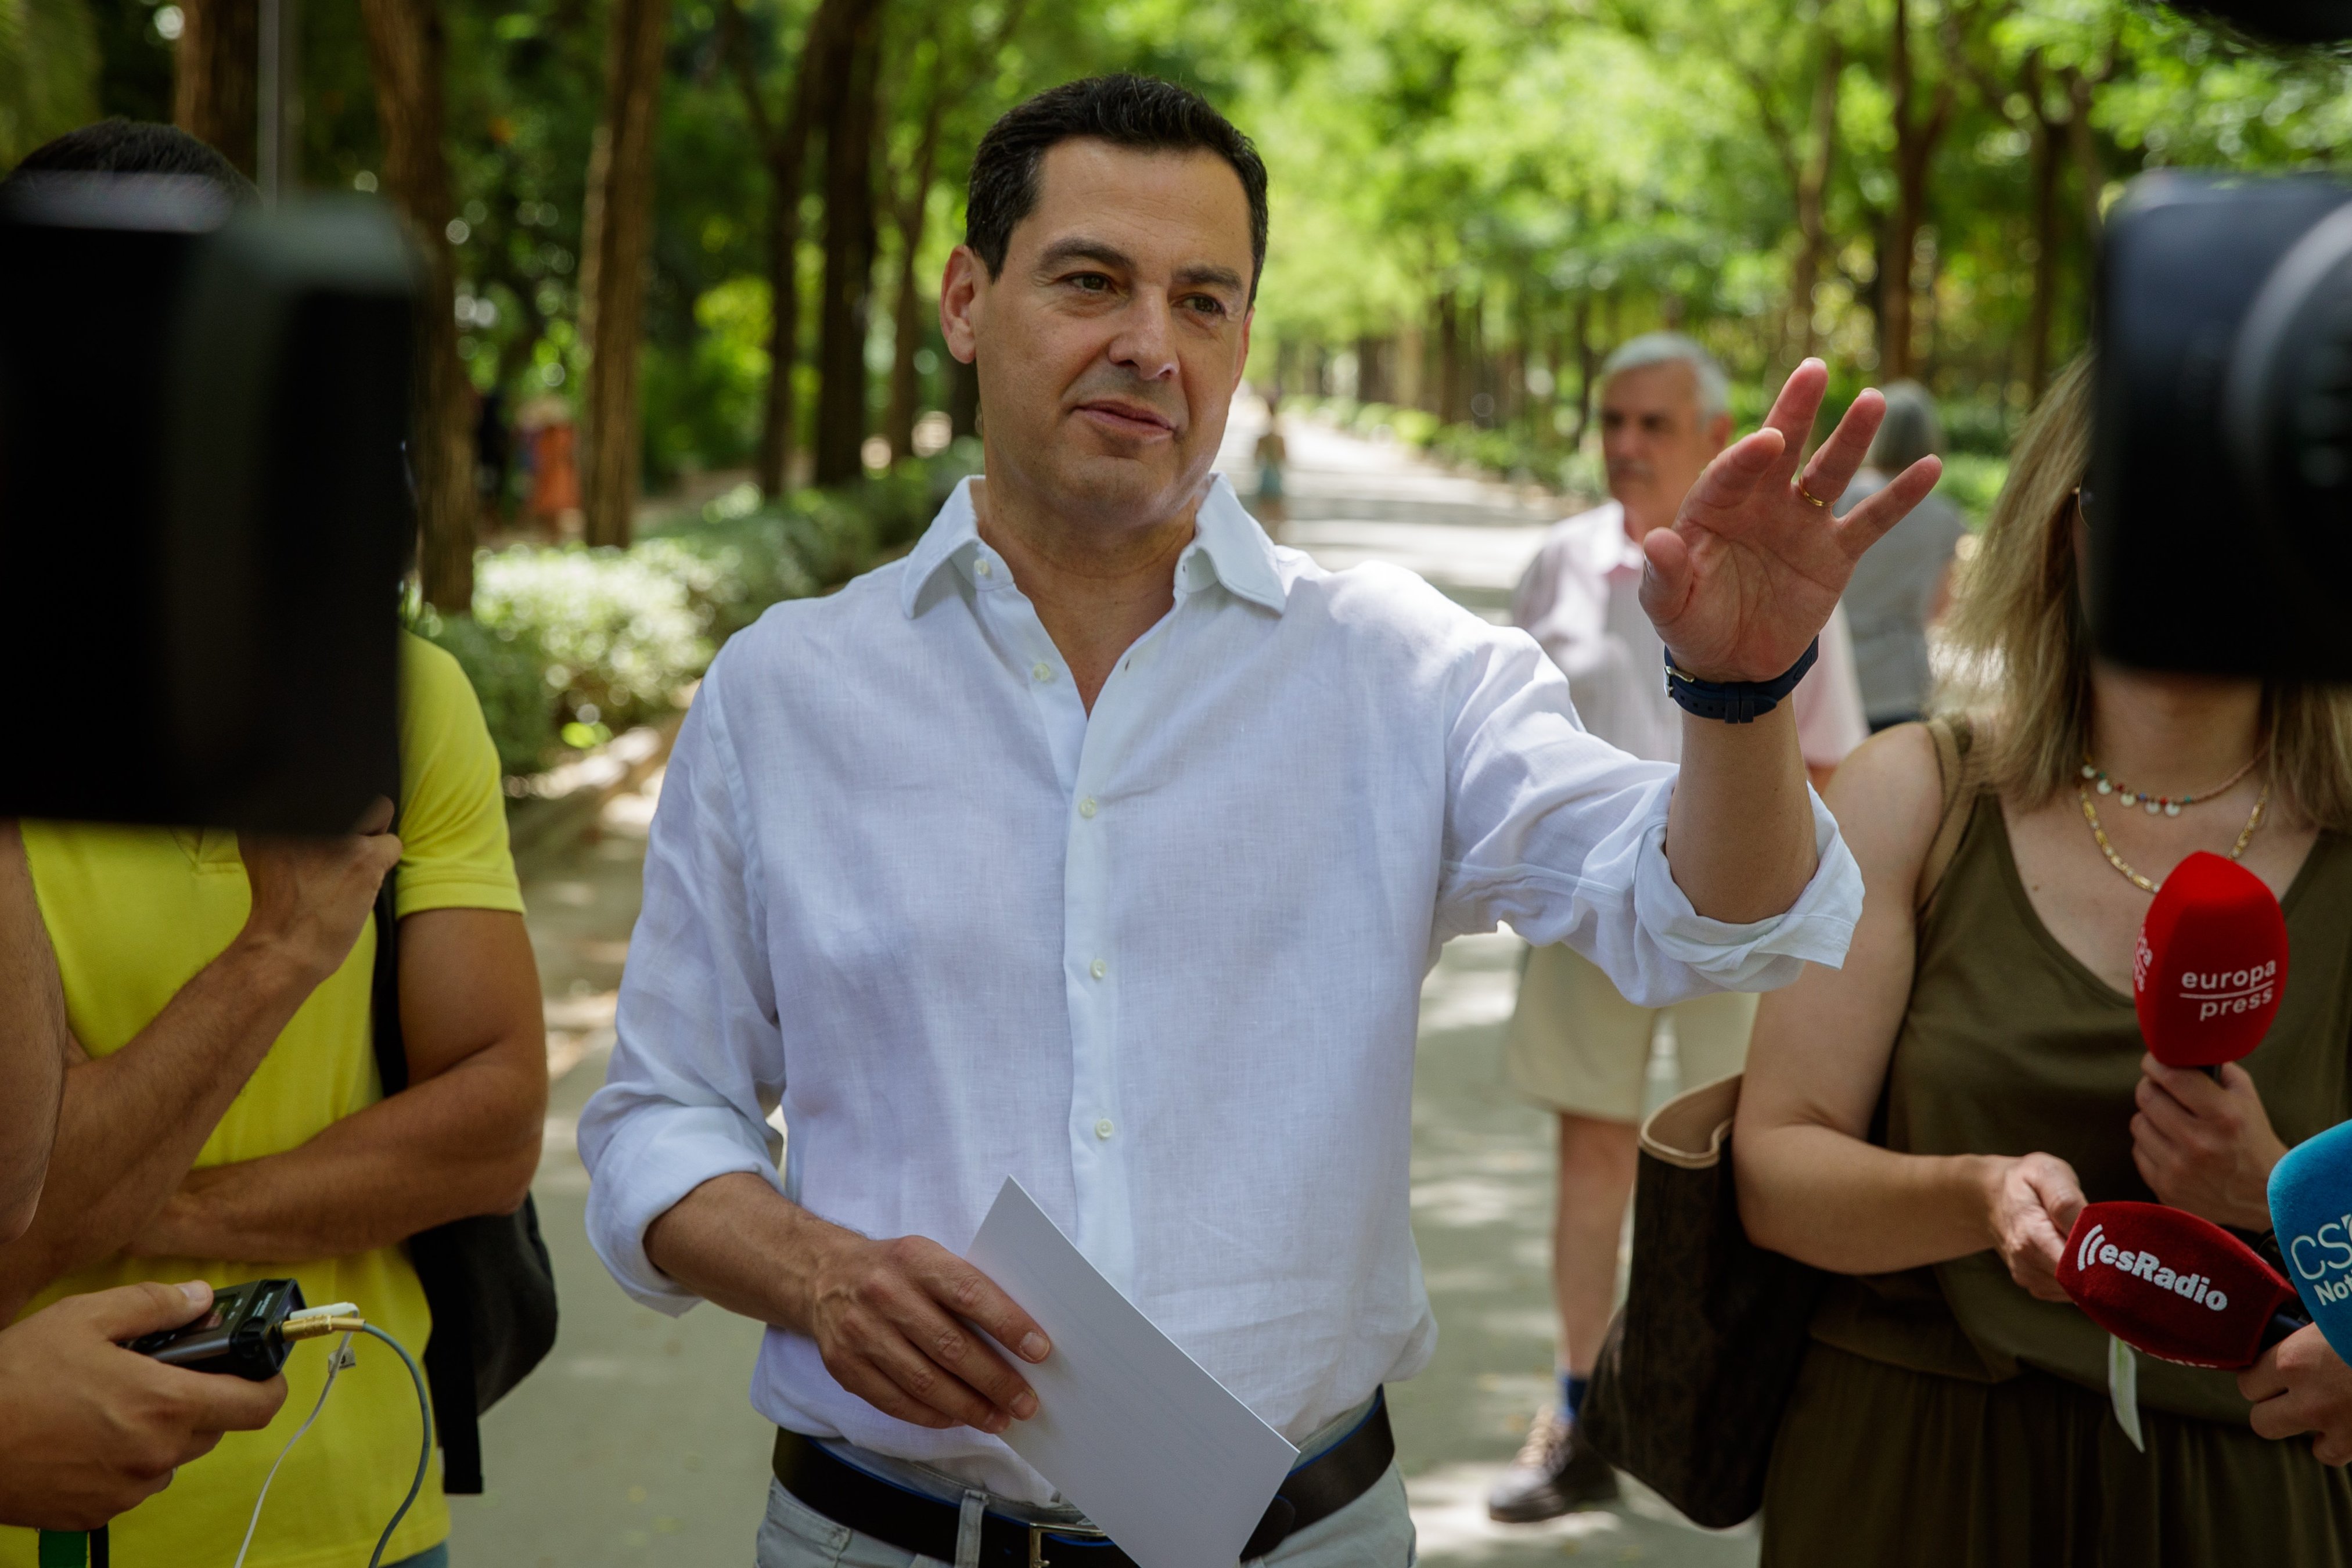 Esquerda a la dreta: Juanma Moreno reitera que Vox fa "por" a l'electorat i crida a tornar al centre